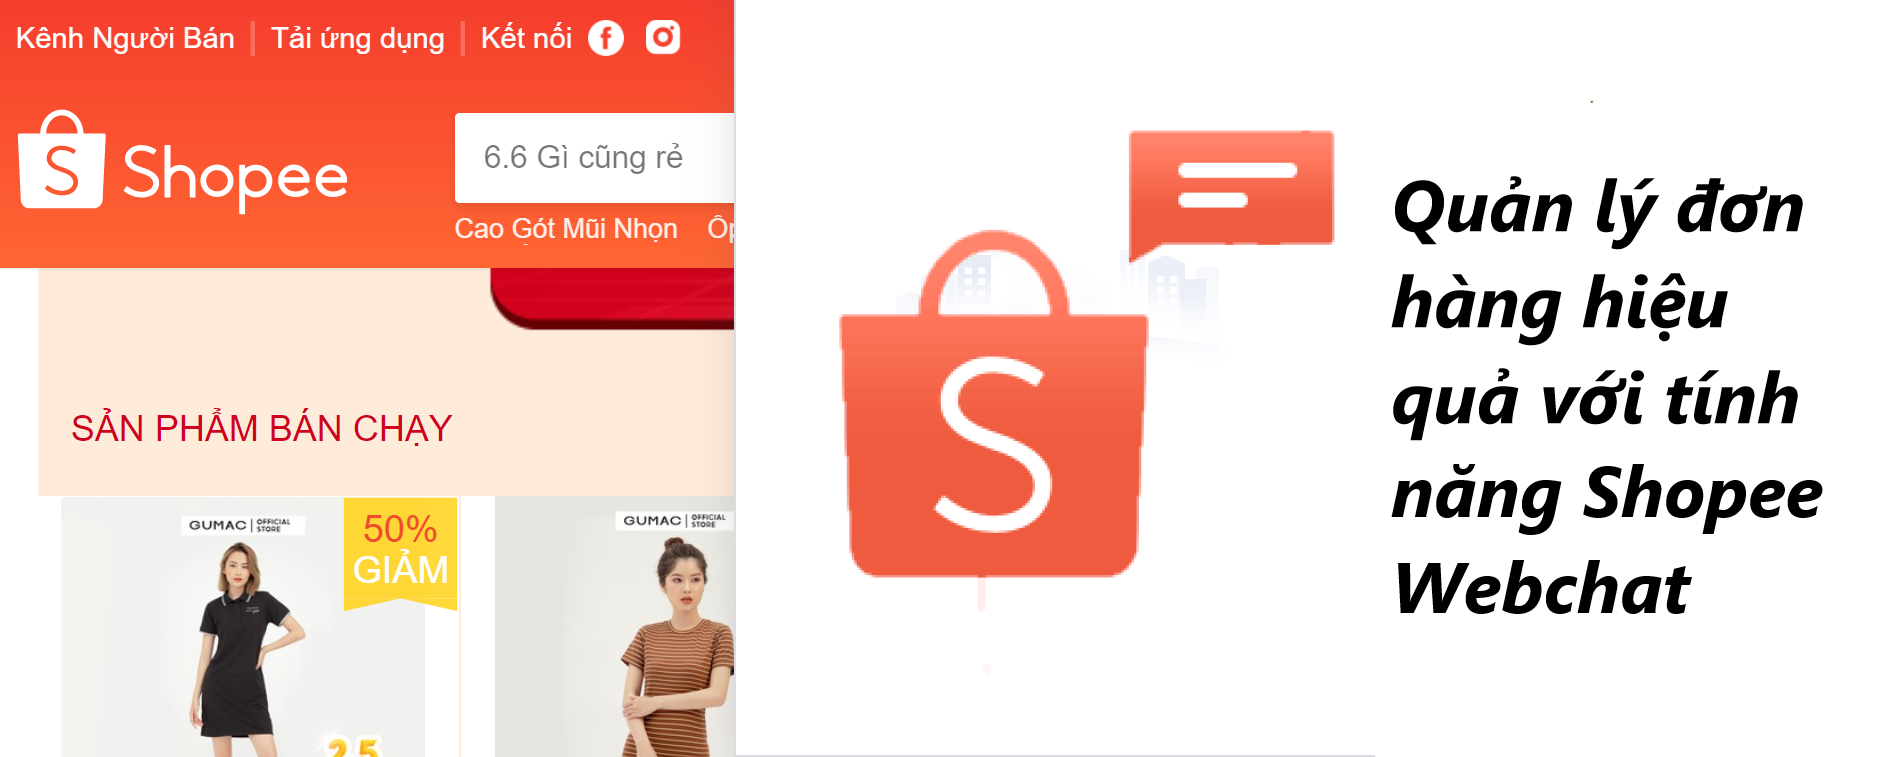 Quản lý đơn hàng hiệu quả với tính năng Shopee Webchat